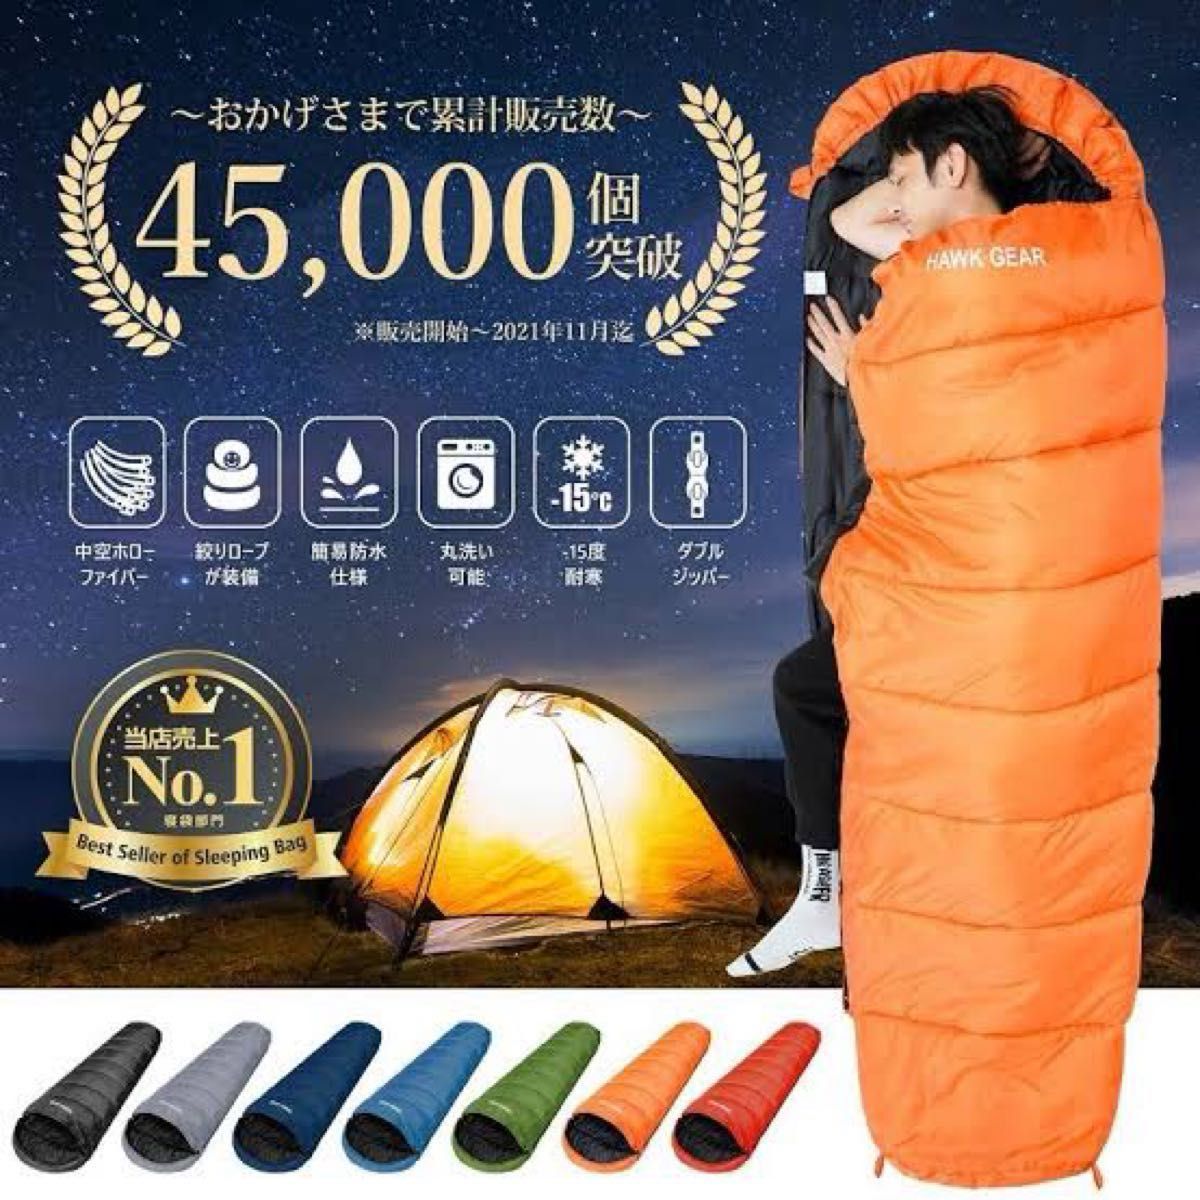 寝袋 シュラフ ホークギア マミー型 キャンプ 防災 HAWKGEAR カーキ